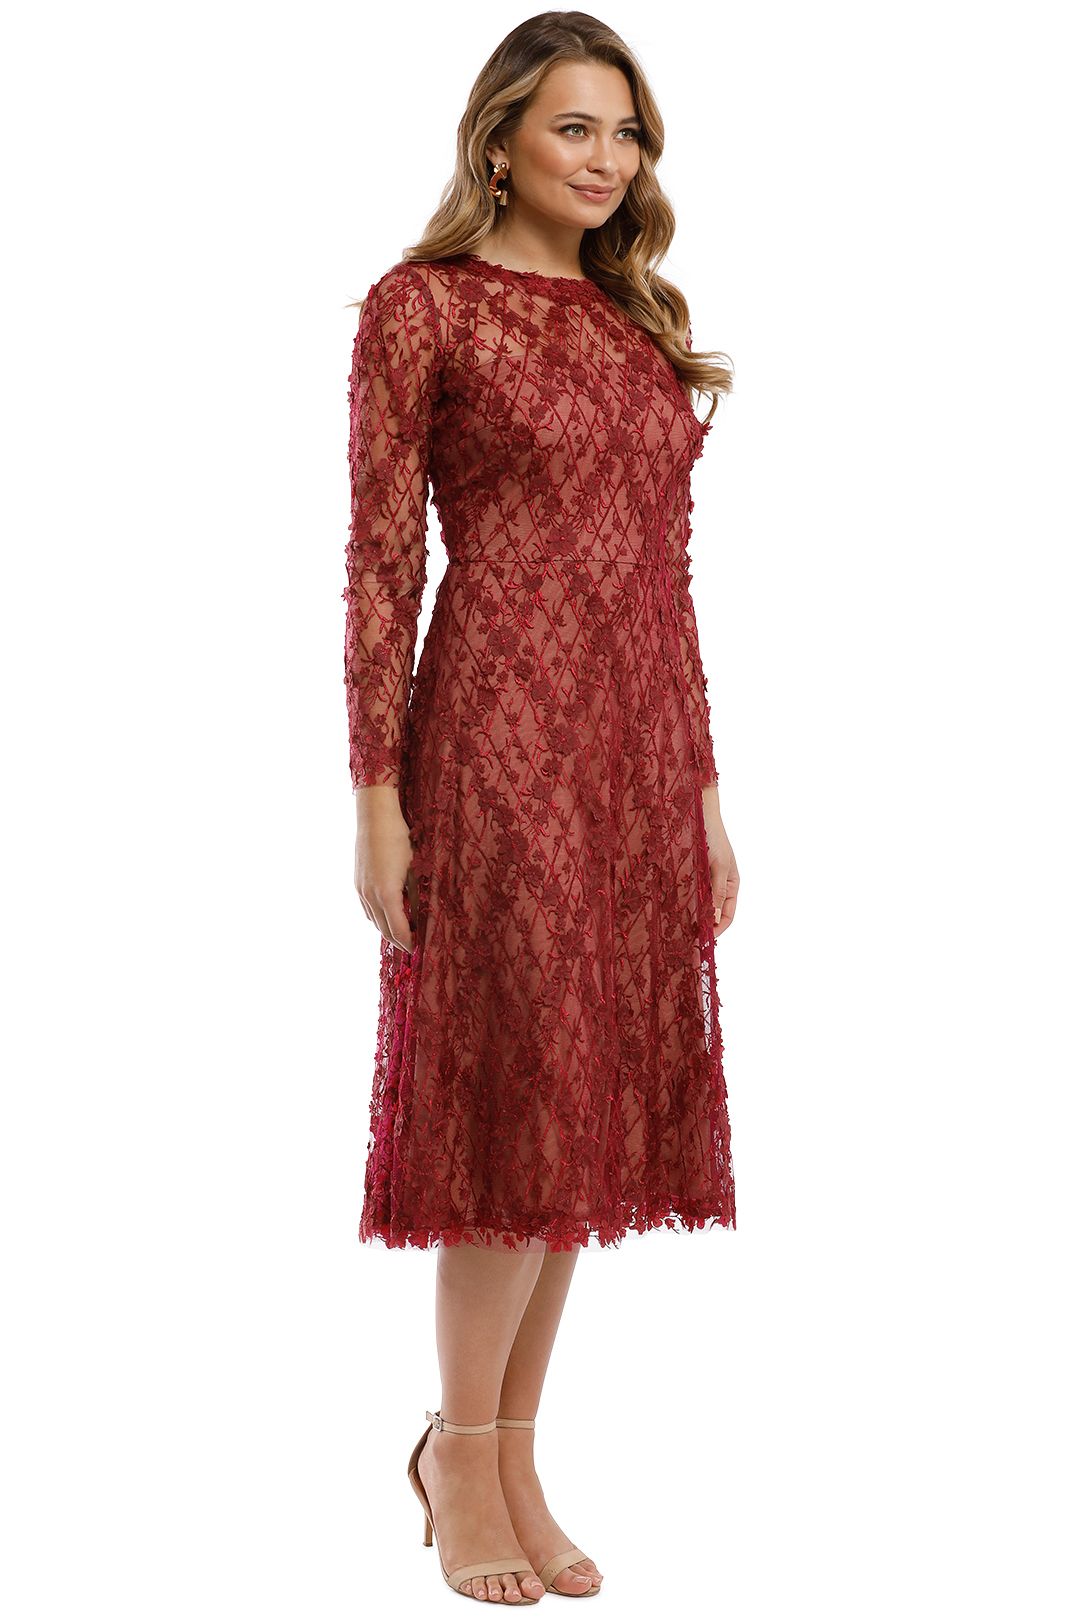 Tadashi Shoji - Binx Embroidery Tea-Length Dress - Roseberry - Side